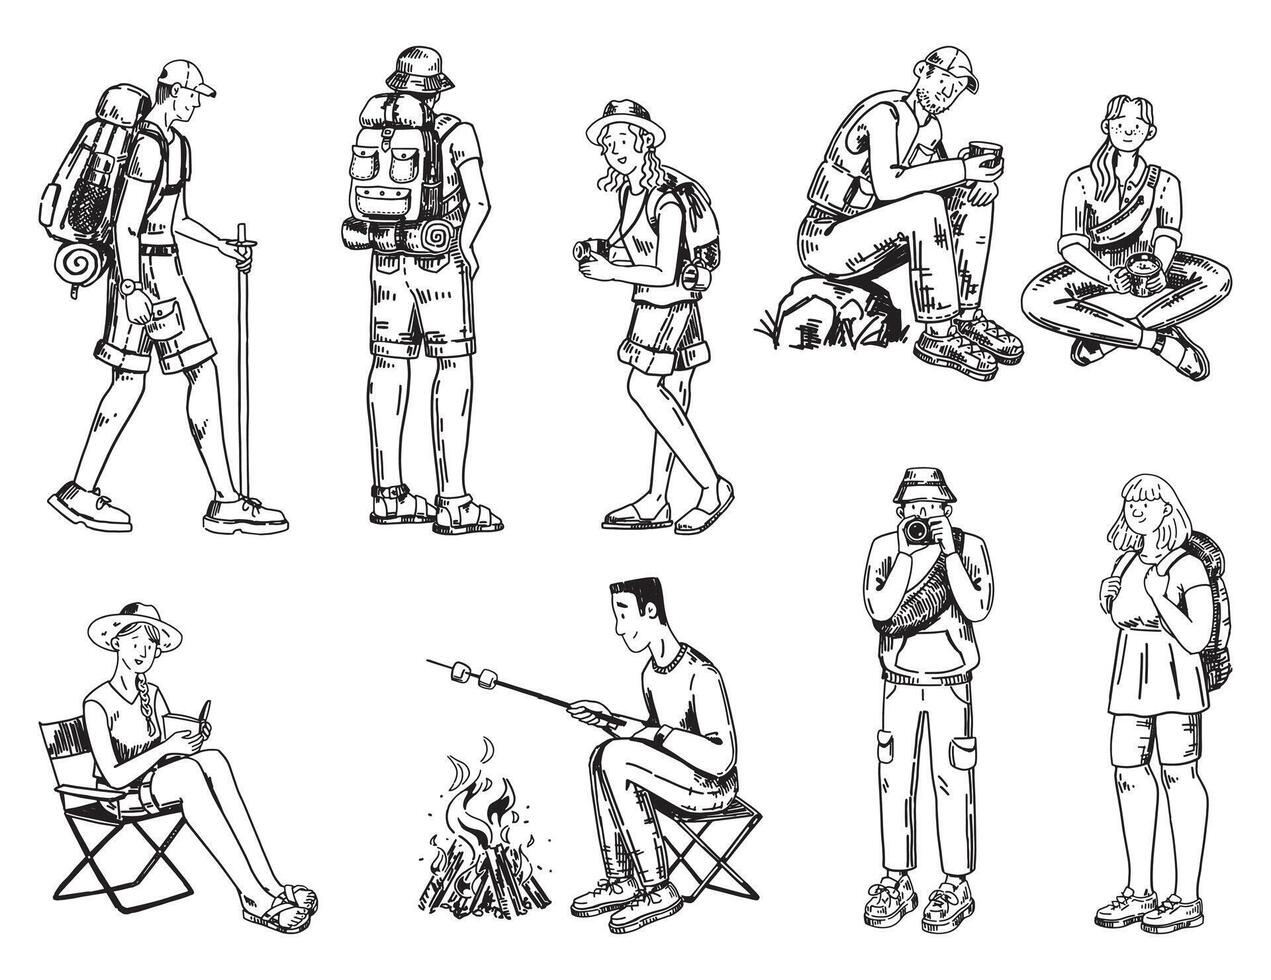 camper schizzi collezione. scarabocchio impostato di vario persone durante escursionismo, campeggio. mano disegnato vettore illustrazioni nel incisione stile.